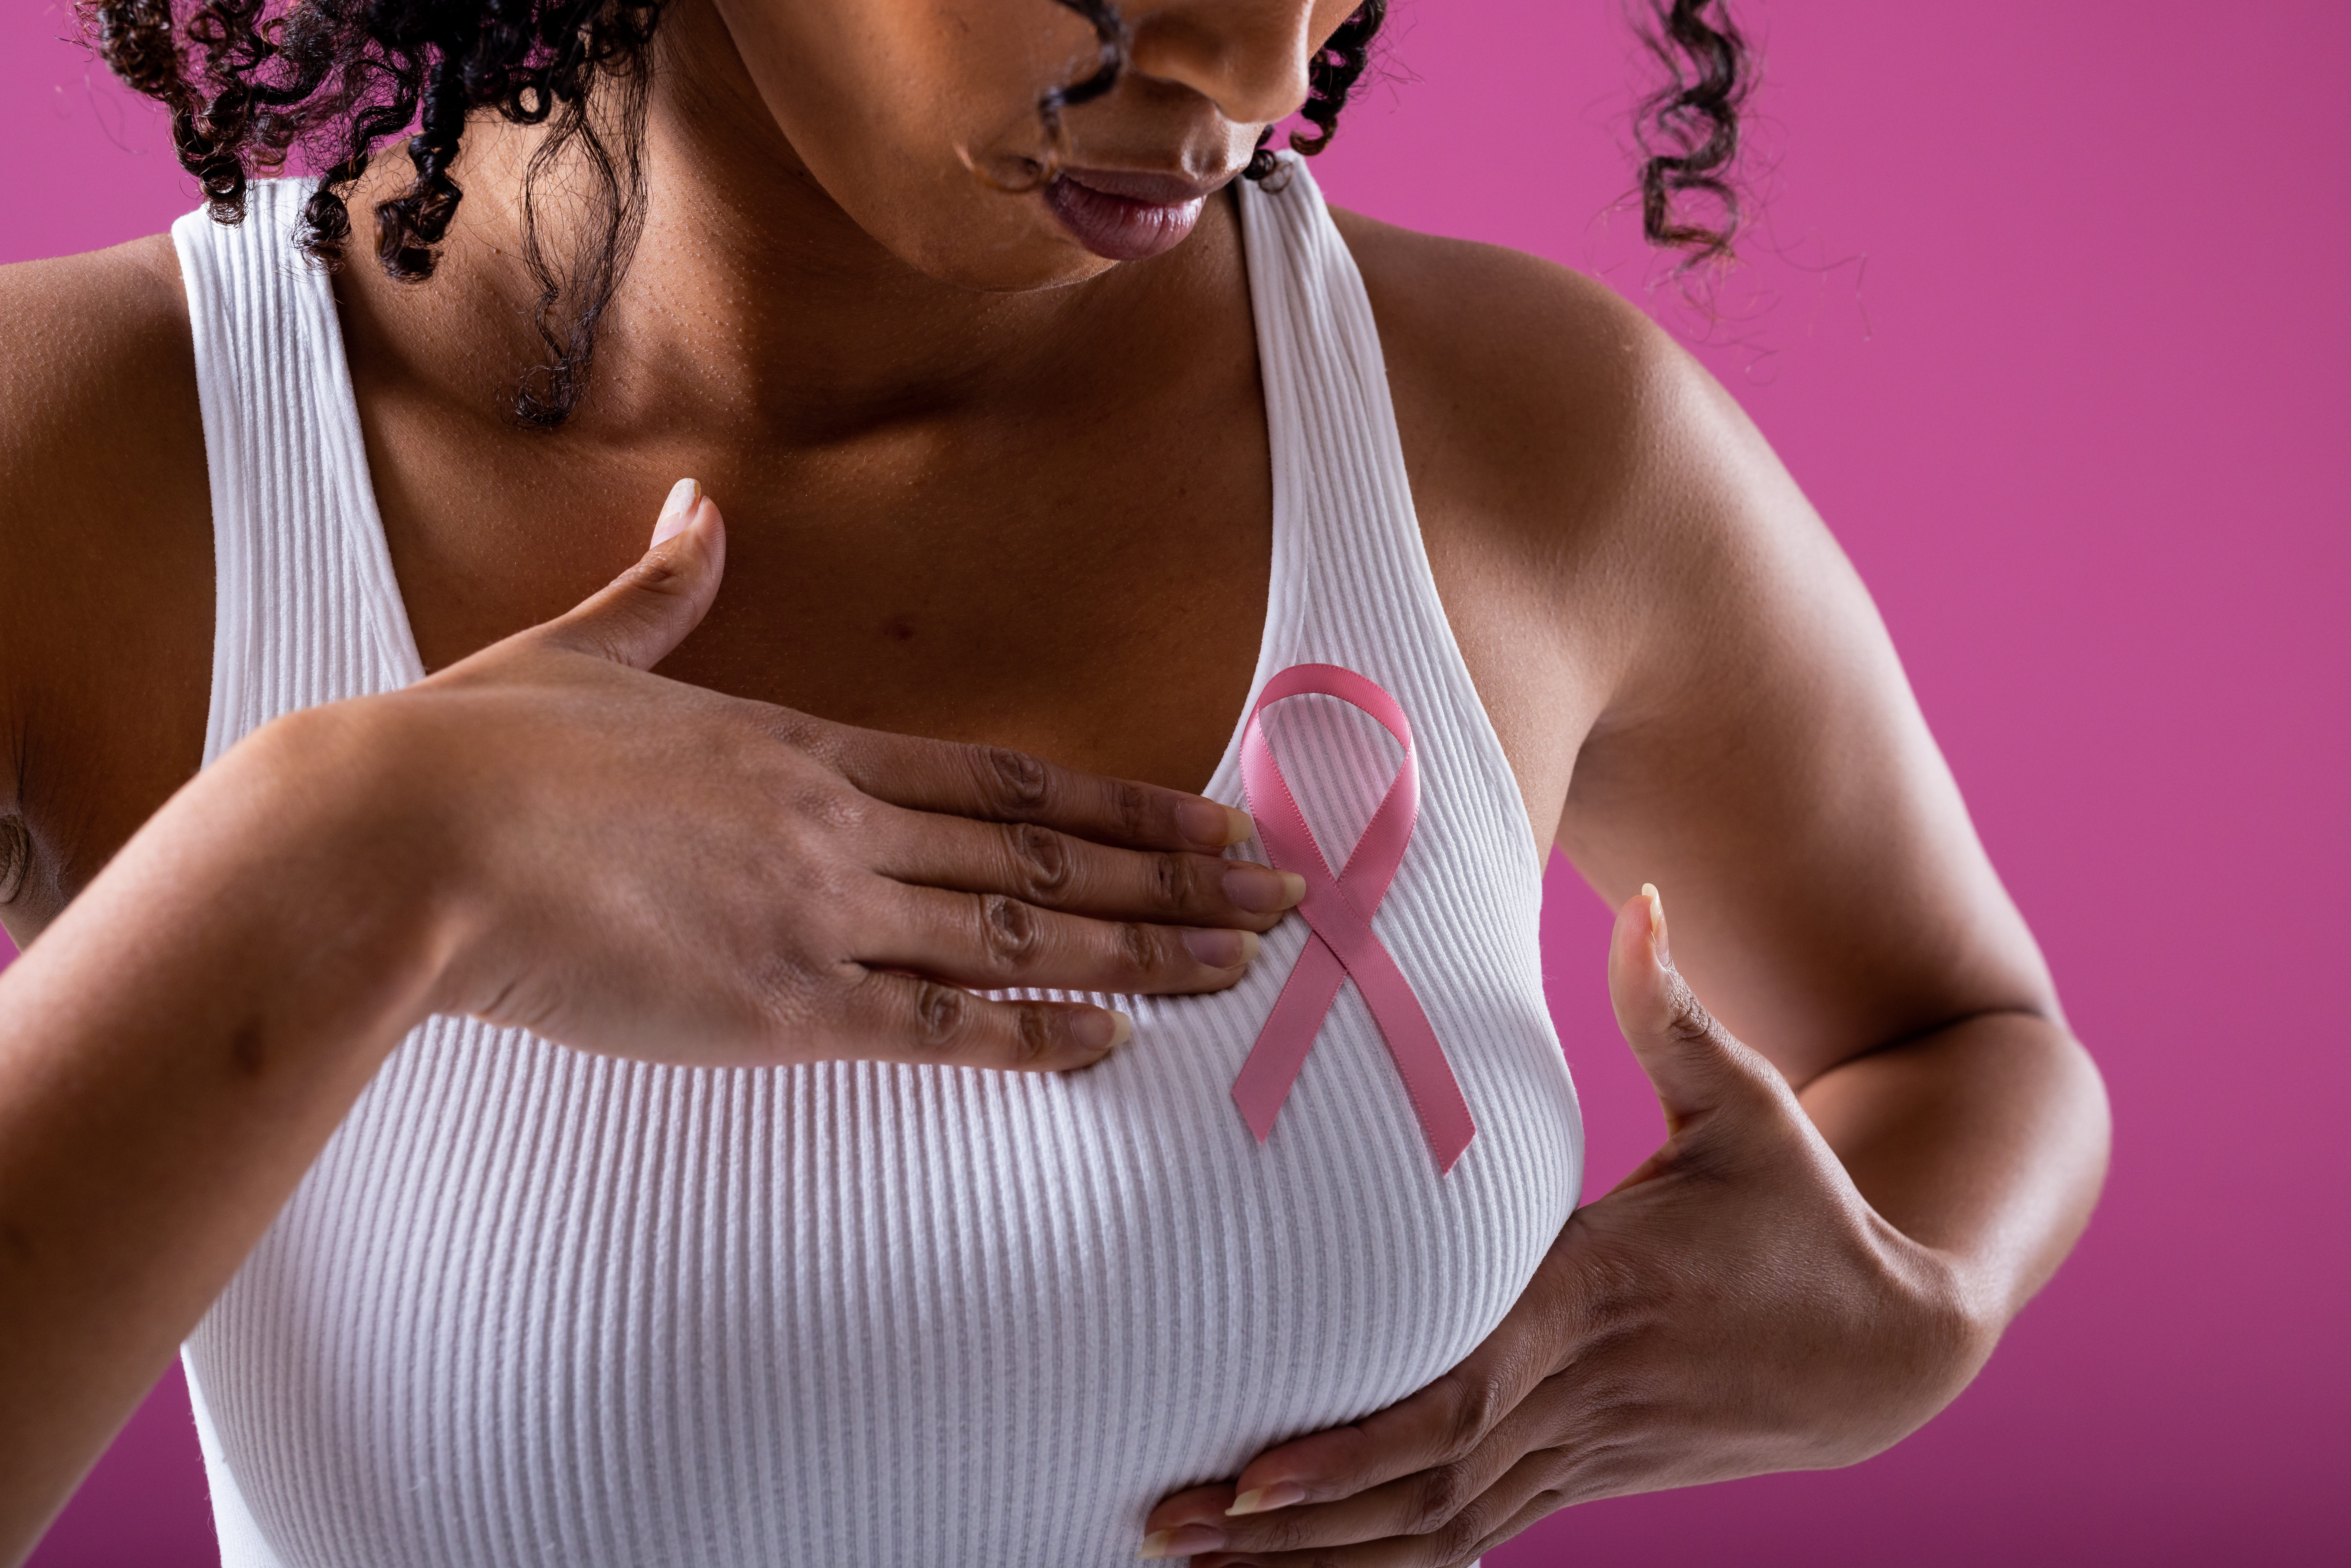 Revolutionary inhibitor target for enhanced immune response against breast cancer relapse